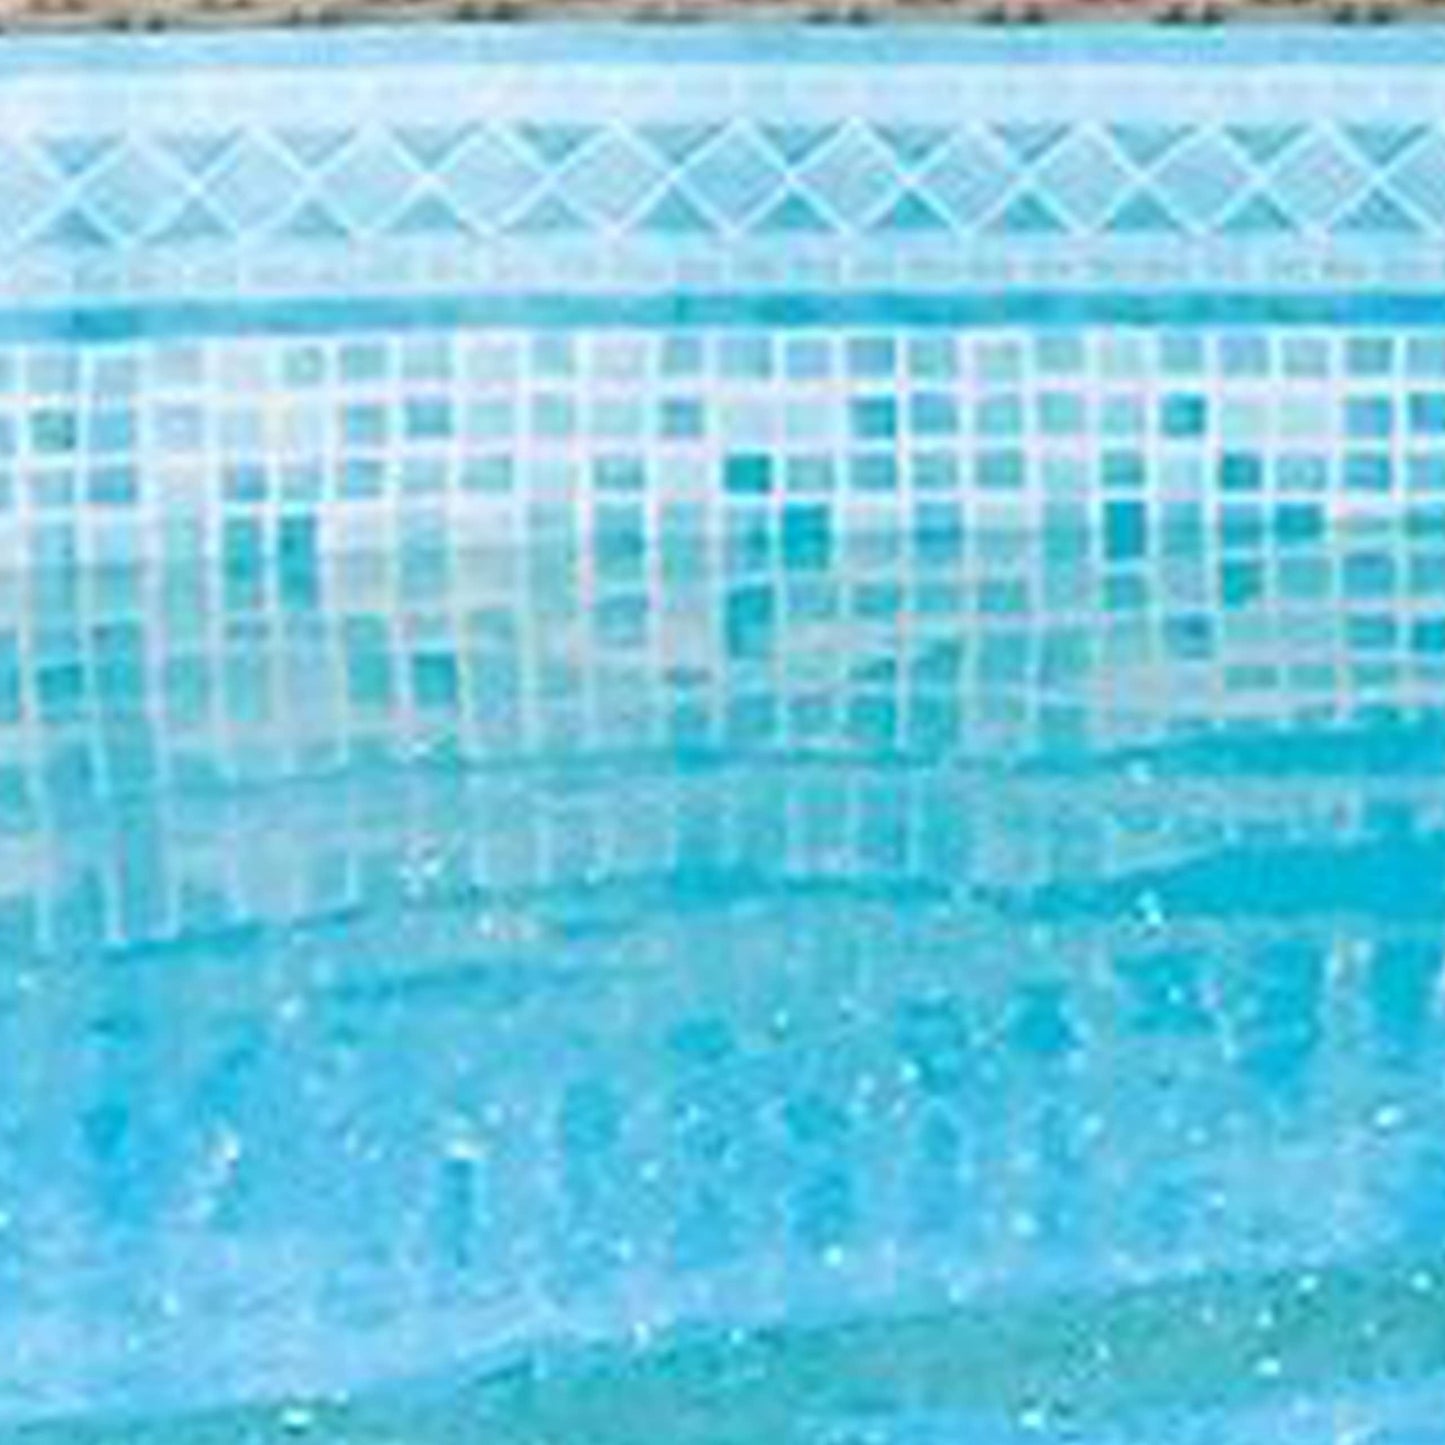 Summer Waves P20014482 Ensemble de piscine hors sol à cadre rond extérieur 14 pi x 48 po avec pompe de filtre skimmer, cartouche filtrante et échelle, osier clair marron/sable